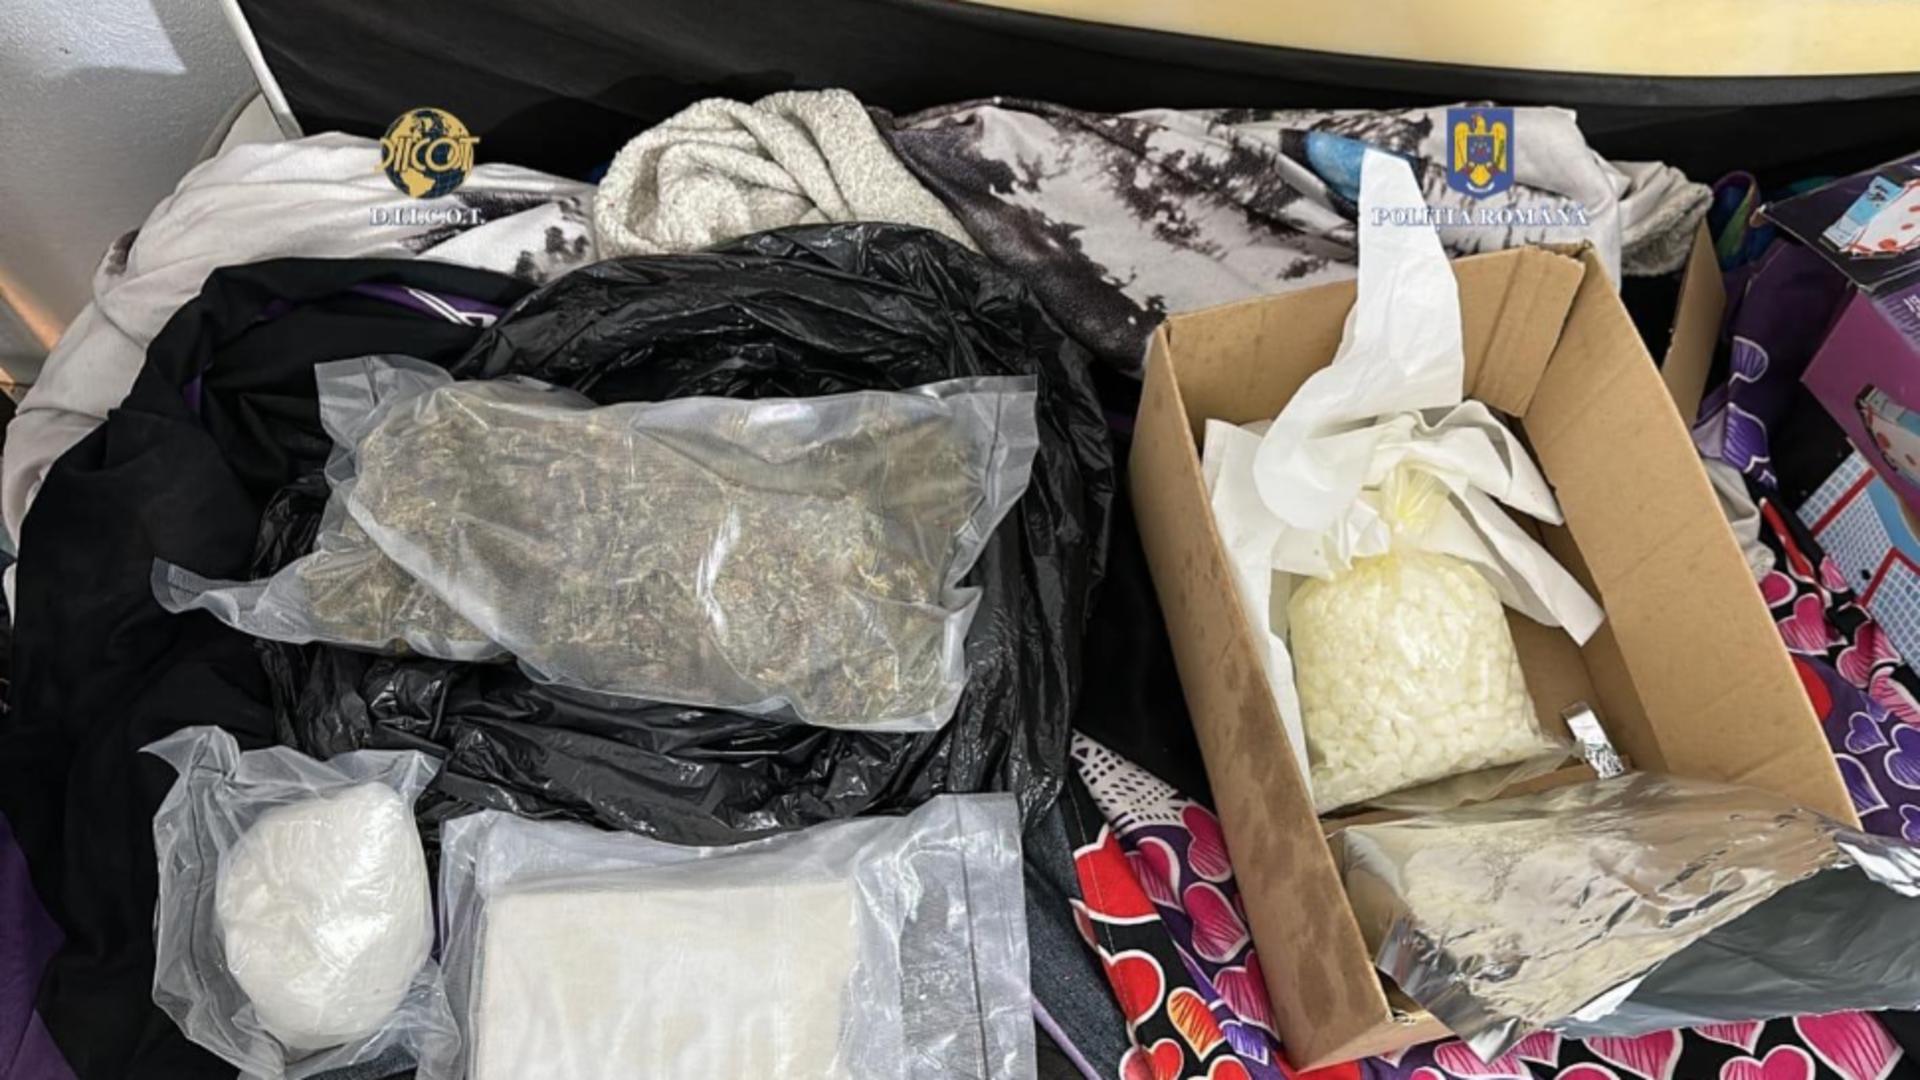 Bărbat, prins în timp ce transporta droguri de mare risc! Stupefiantele urmau să fie vândute pe stradă - Percheziții în 3 județe ale țării